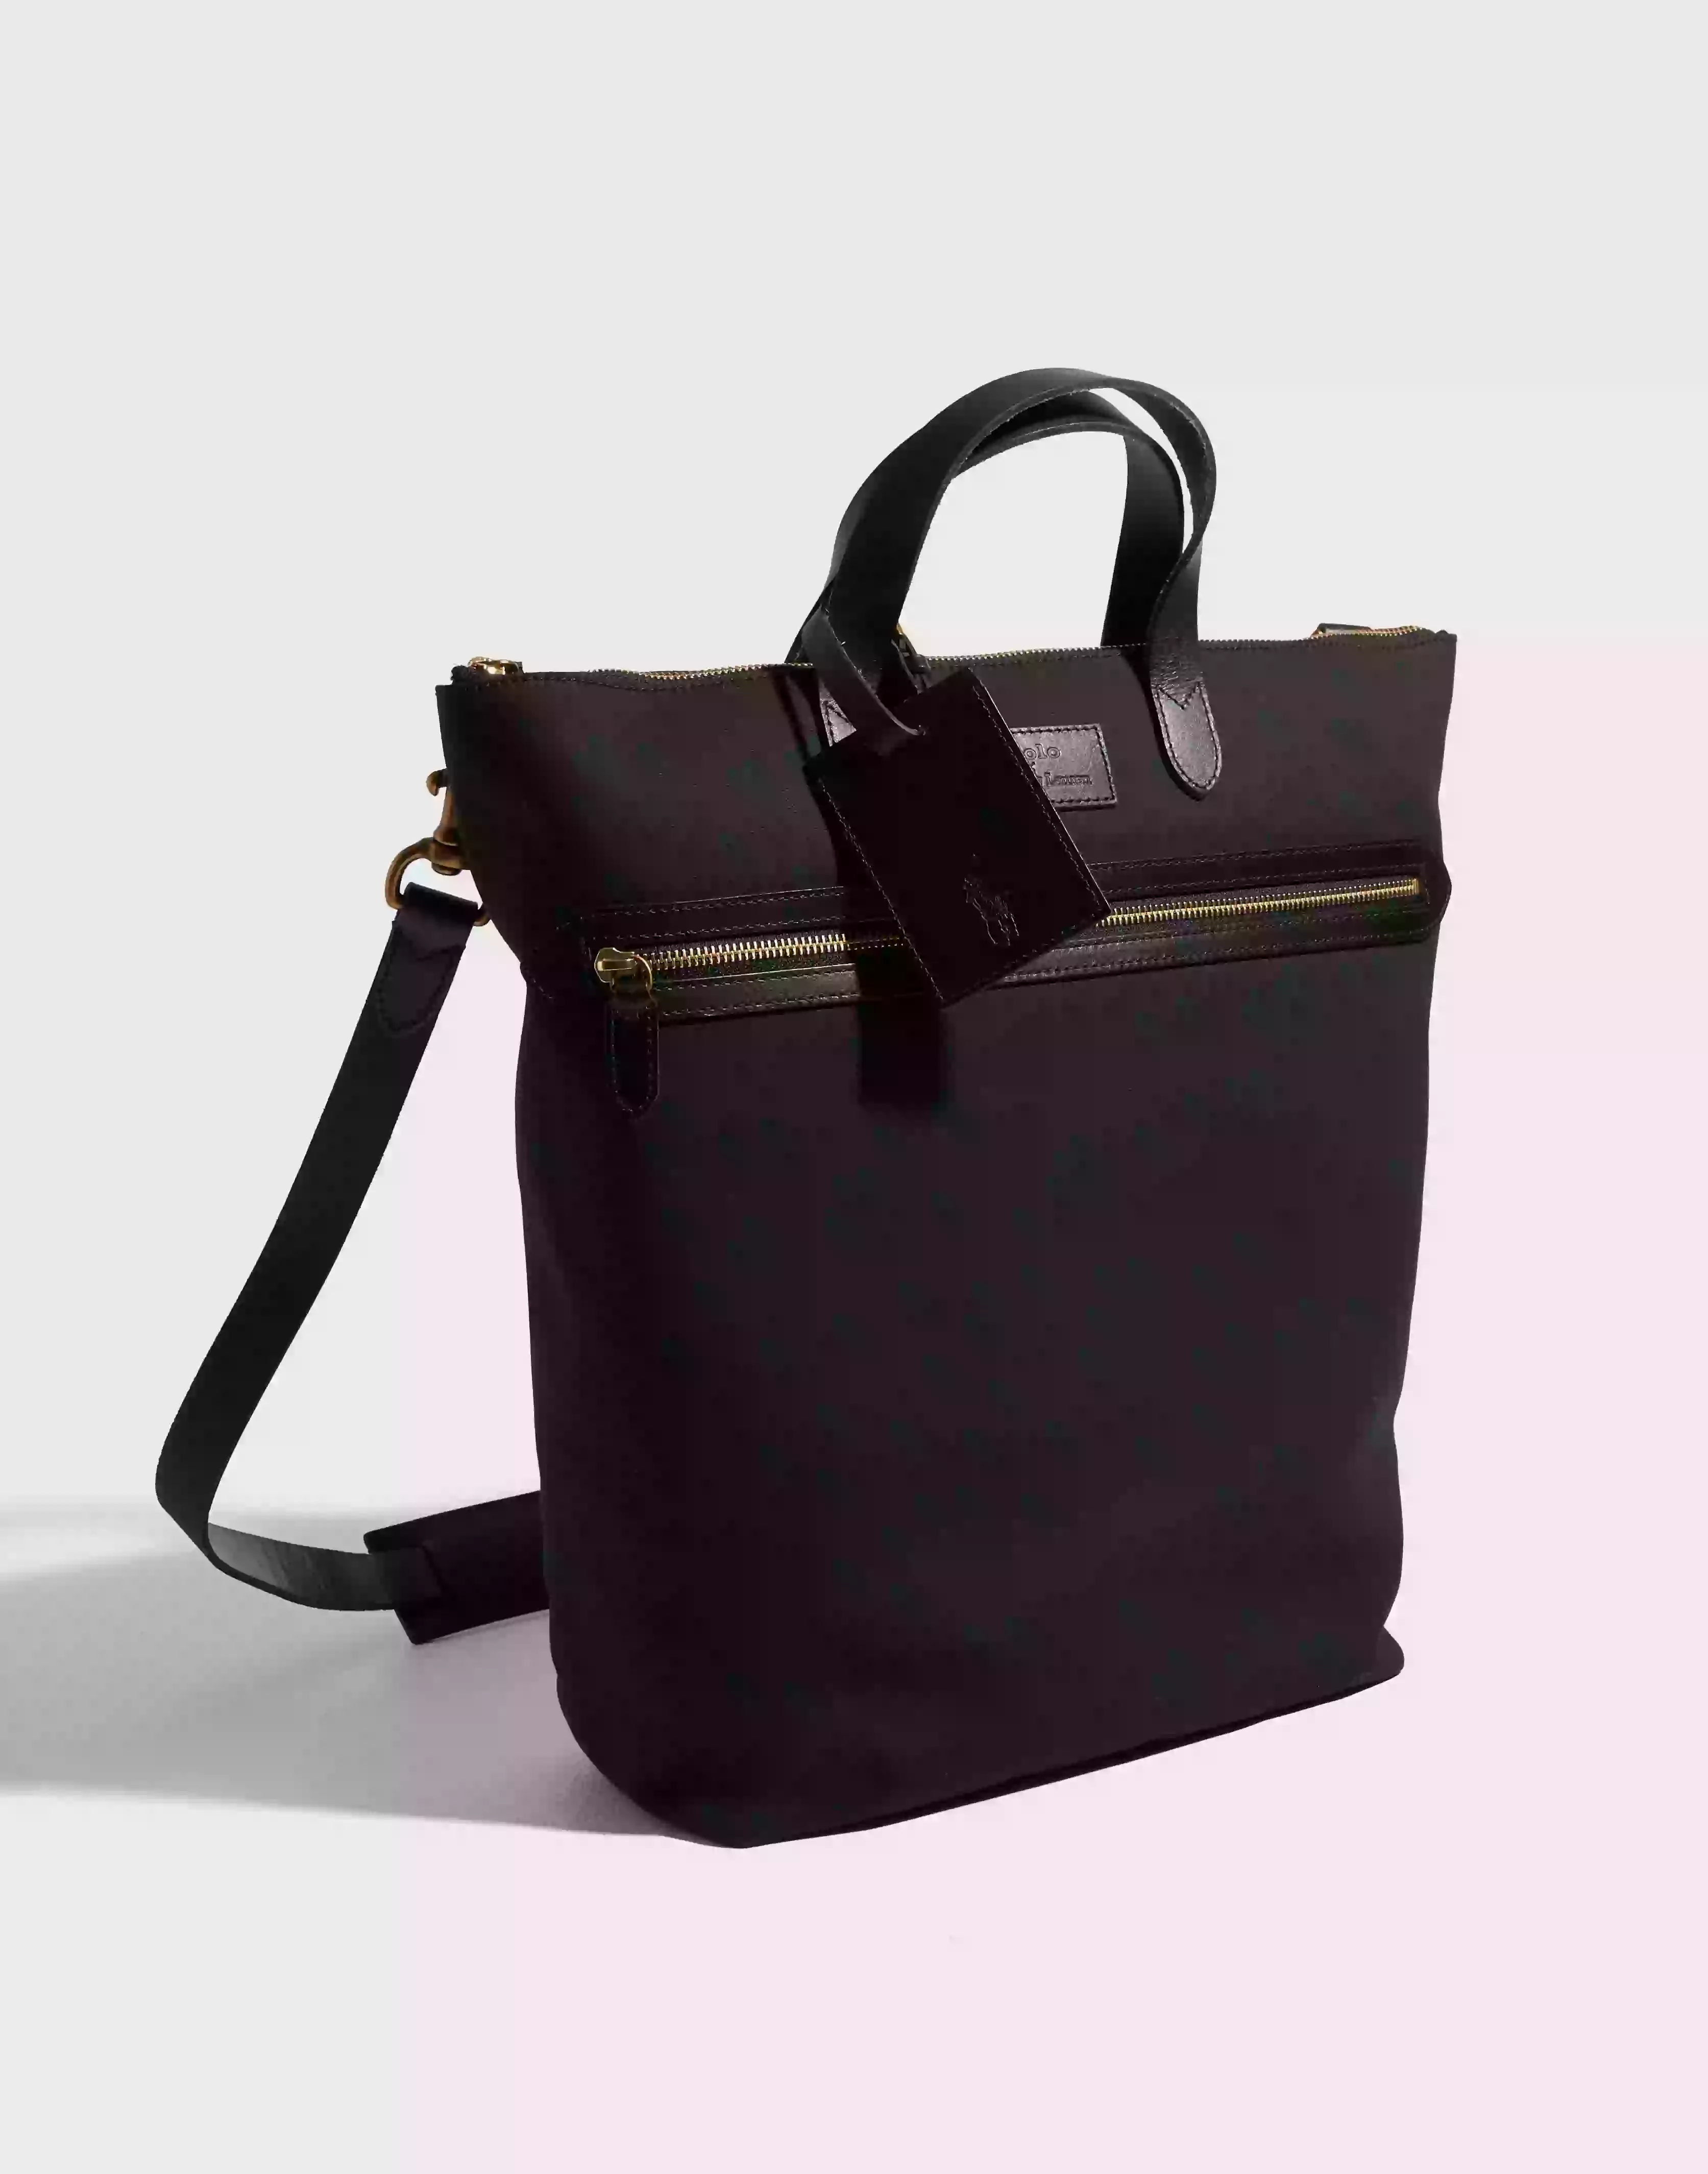 Polo Ralph Lauren Work Tote-Tote-Medium Tote bags Black